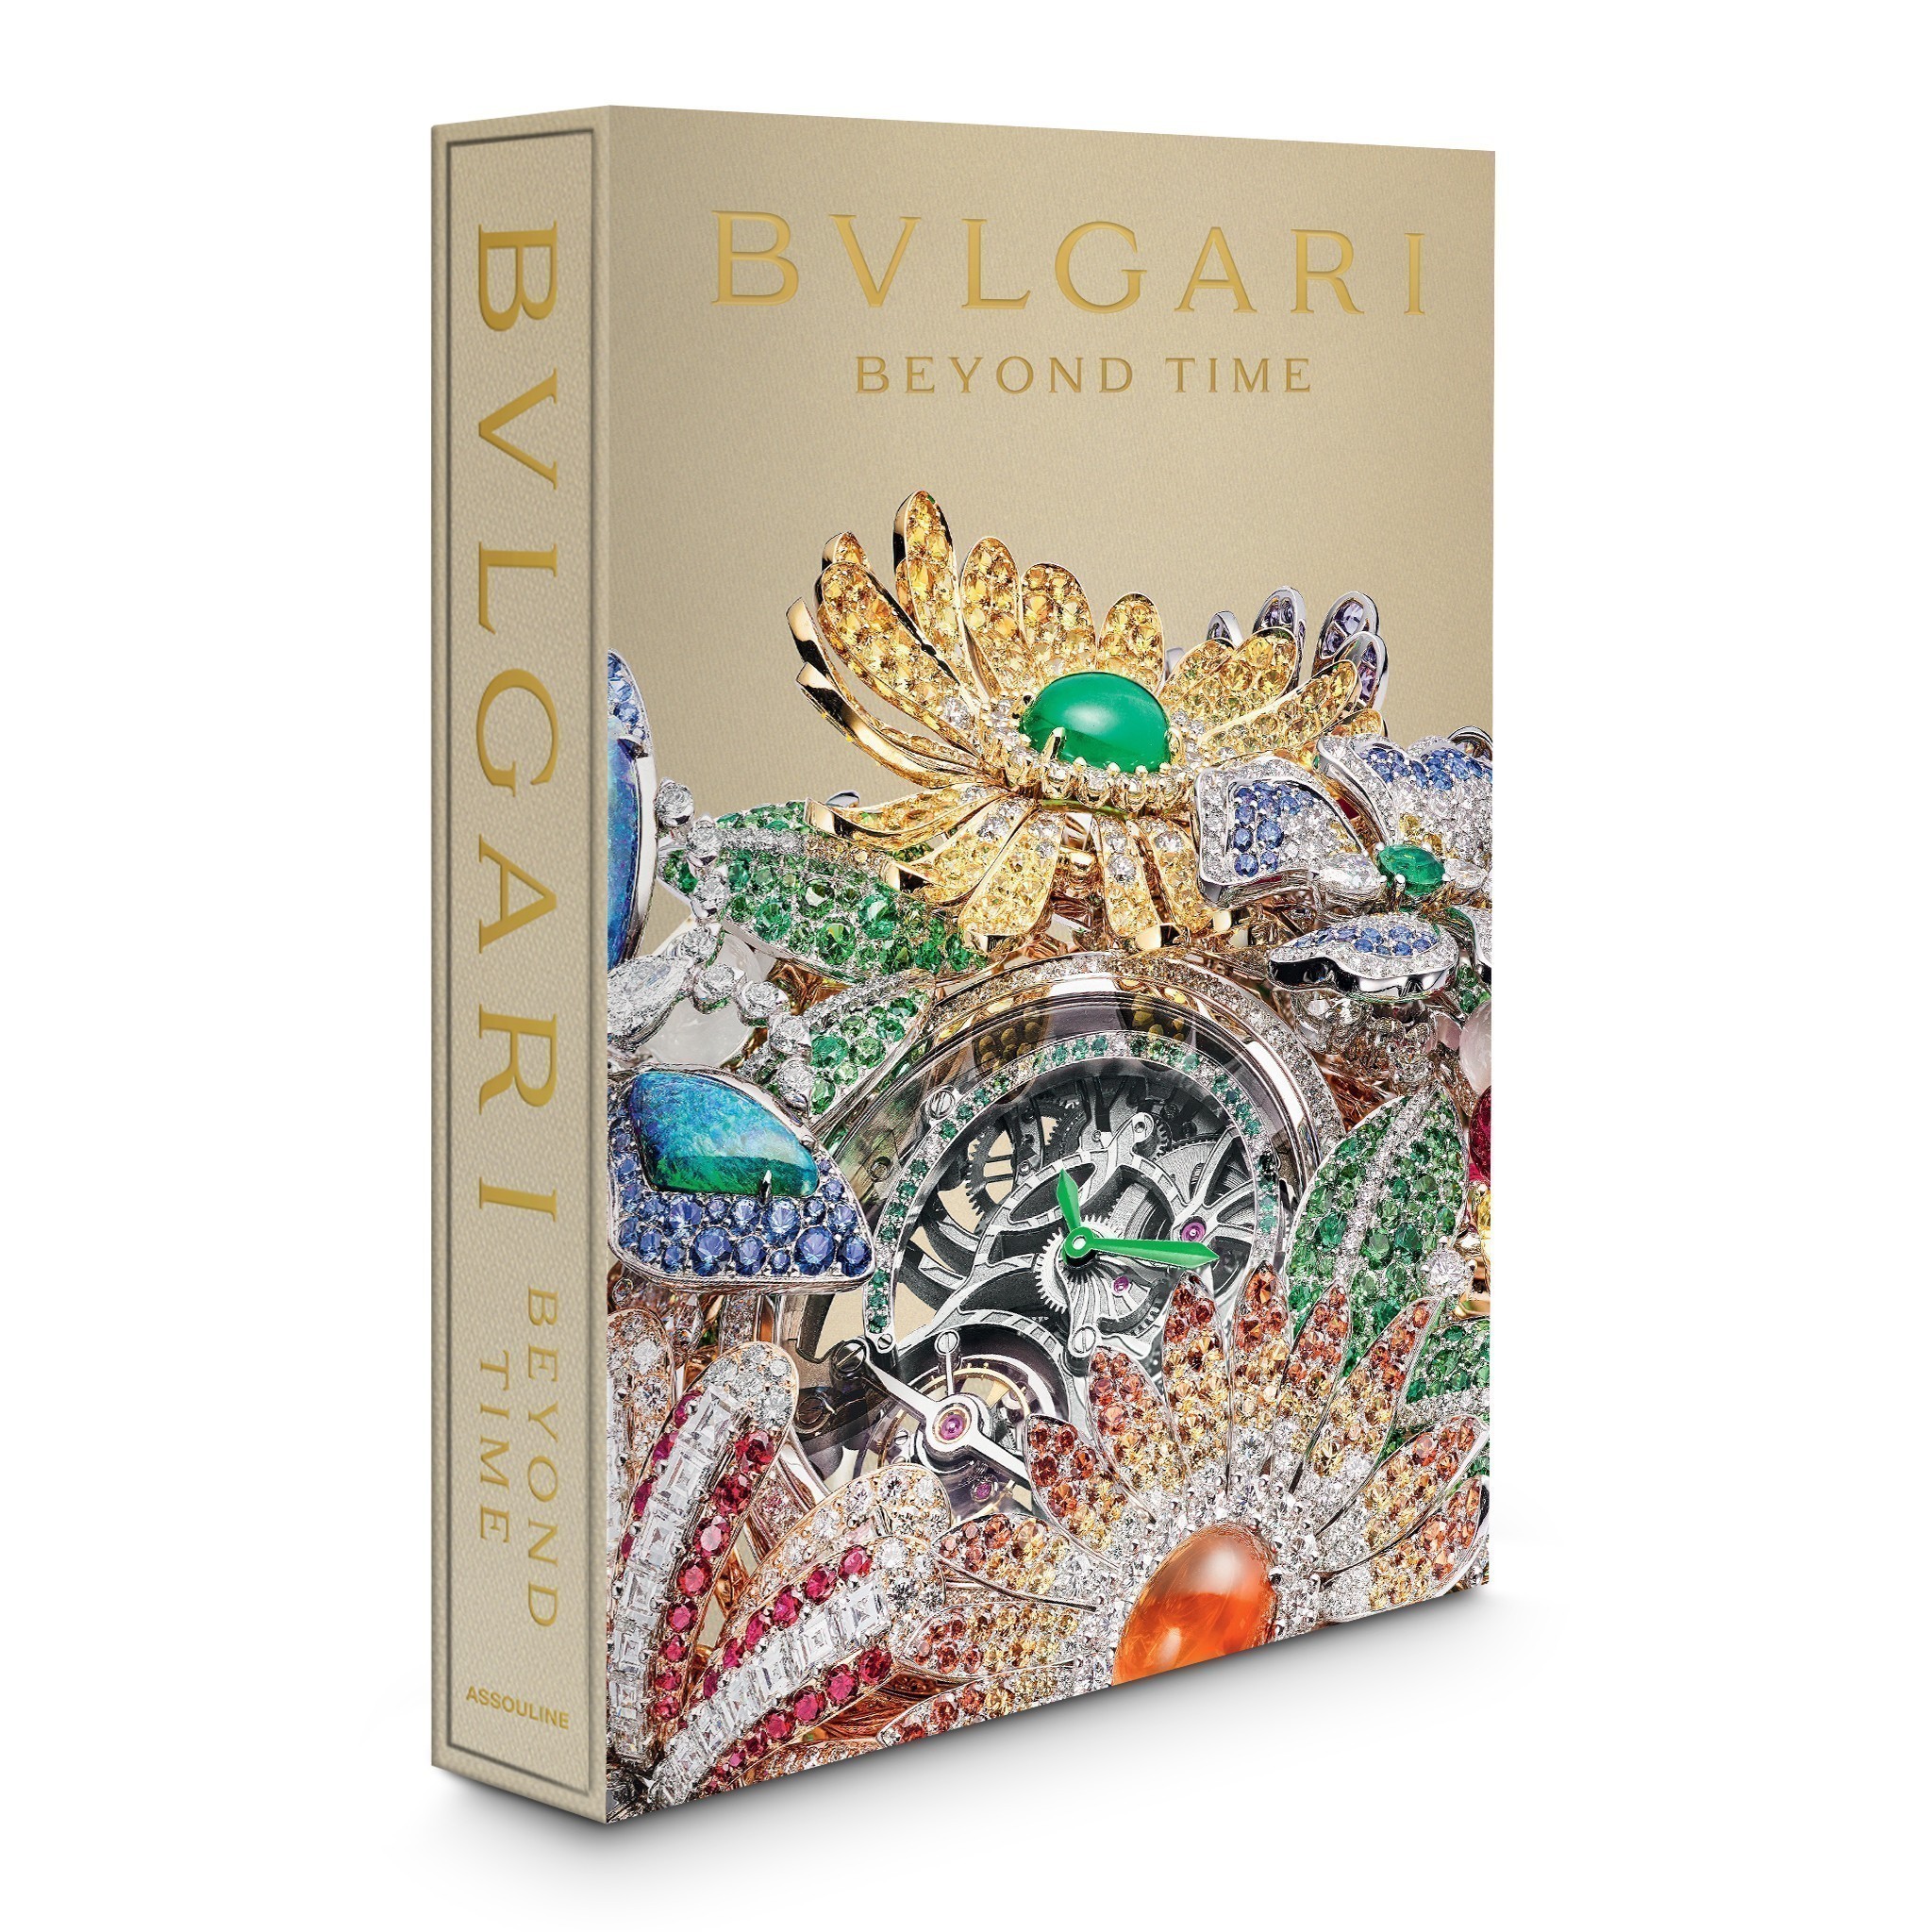 Ρολόγια Βvlgari – Κοσμήματα υψηλής ωρολογοποιίας